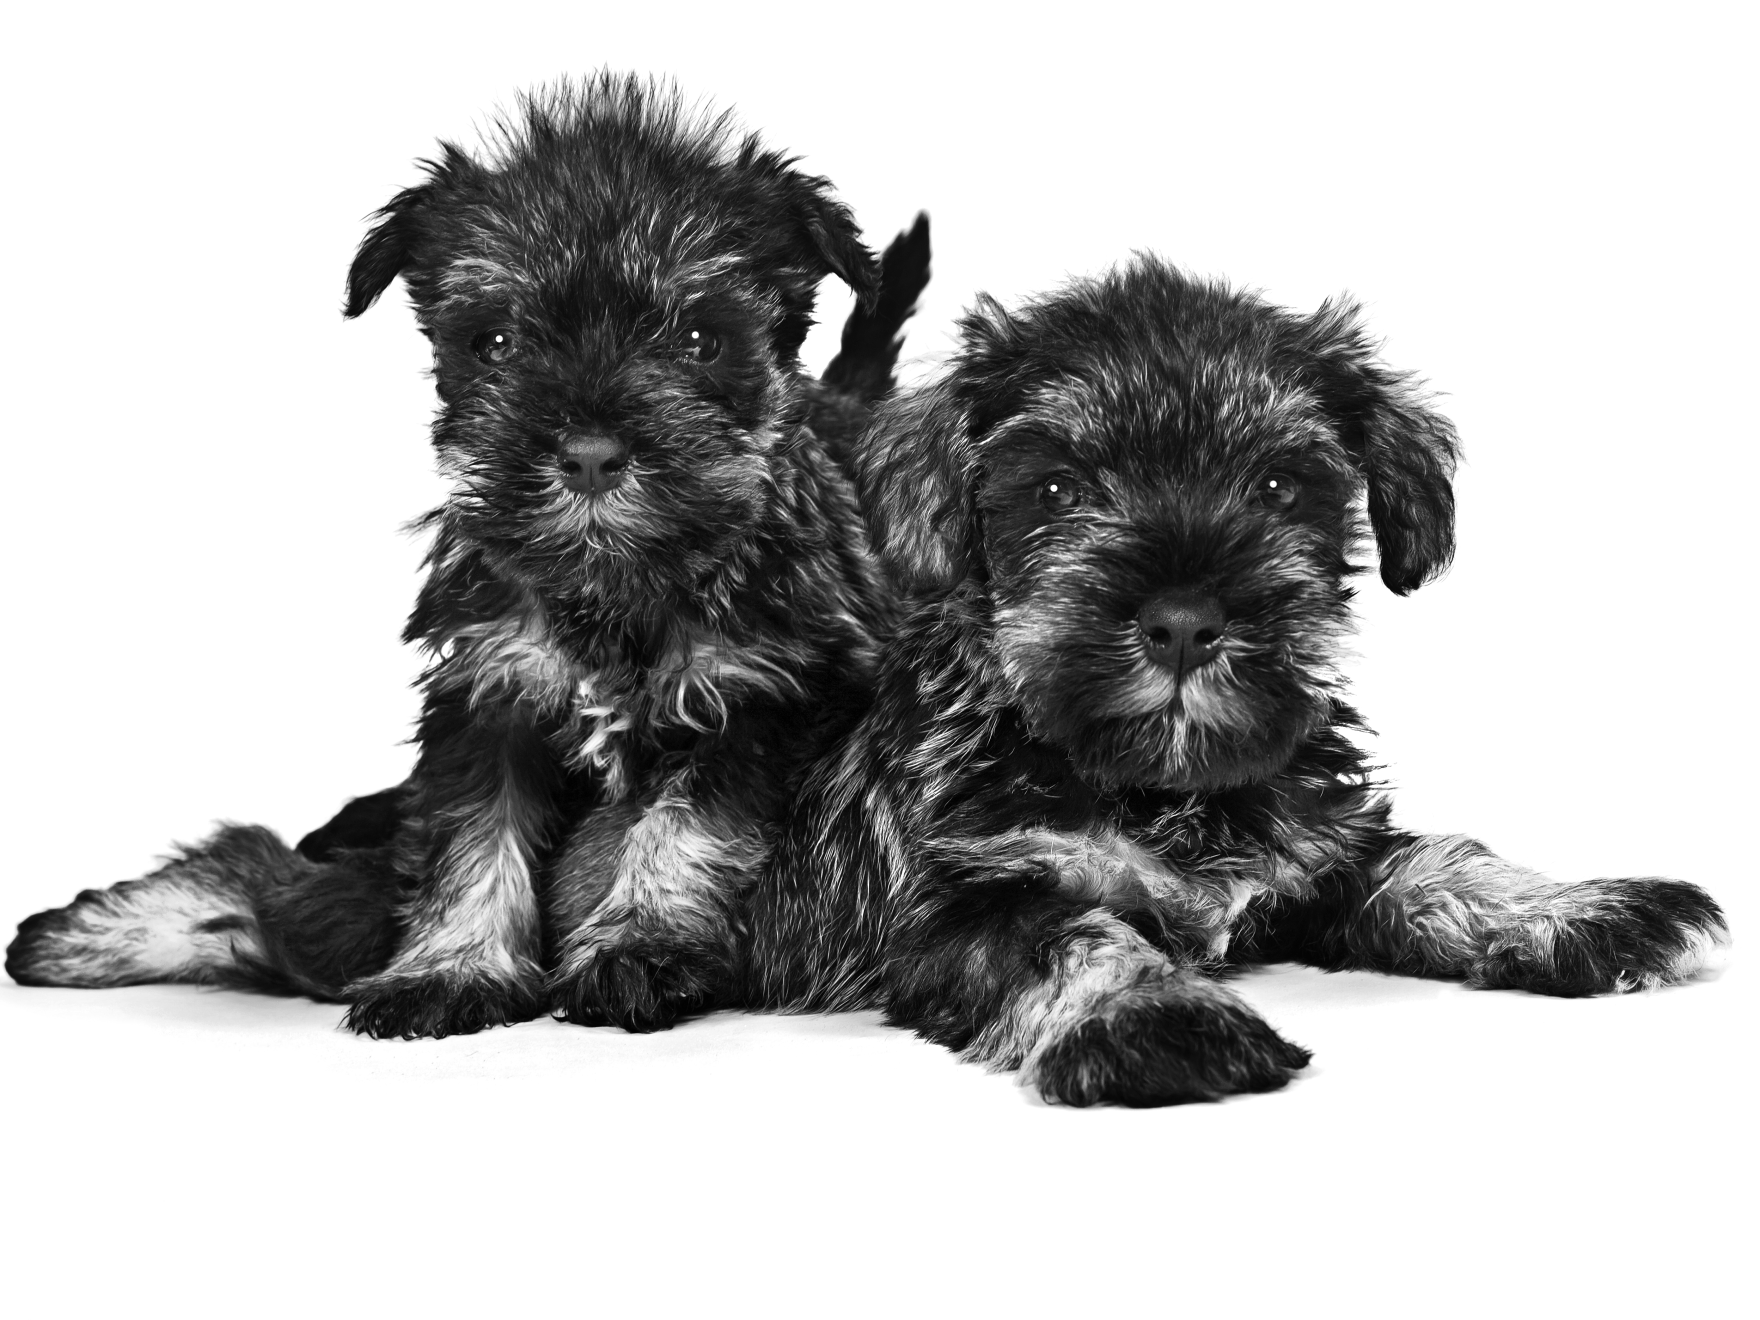 Retrato en blanco y negro de dos cachorros de Schnauzer Miniatura acostados